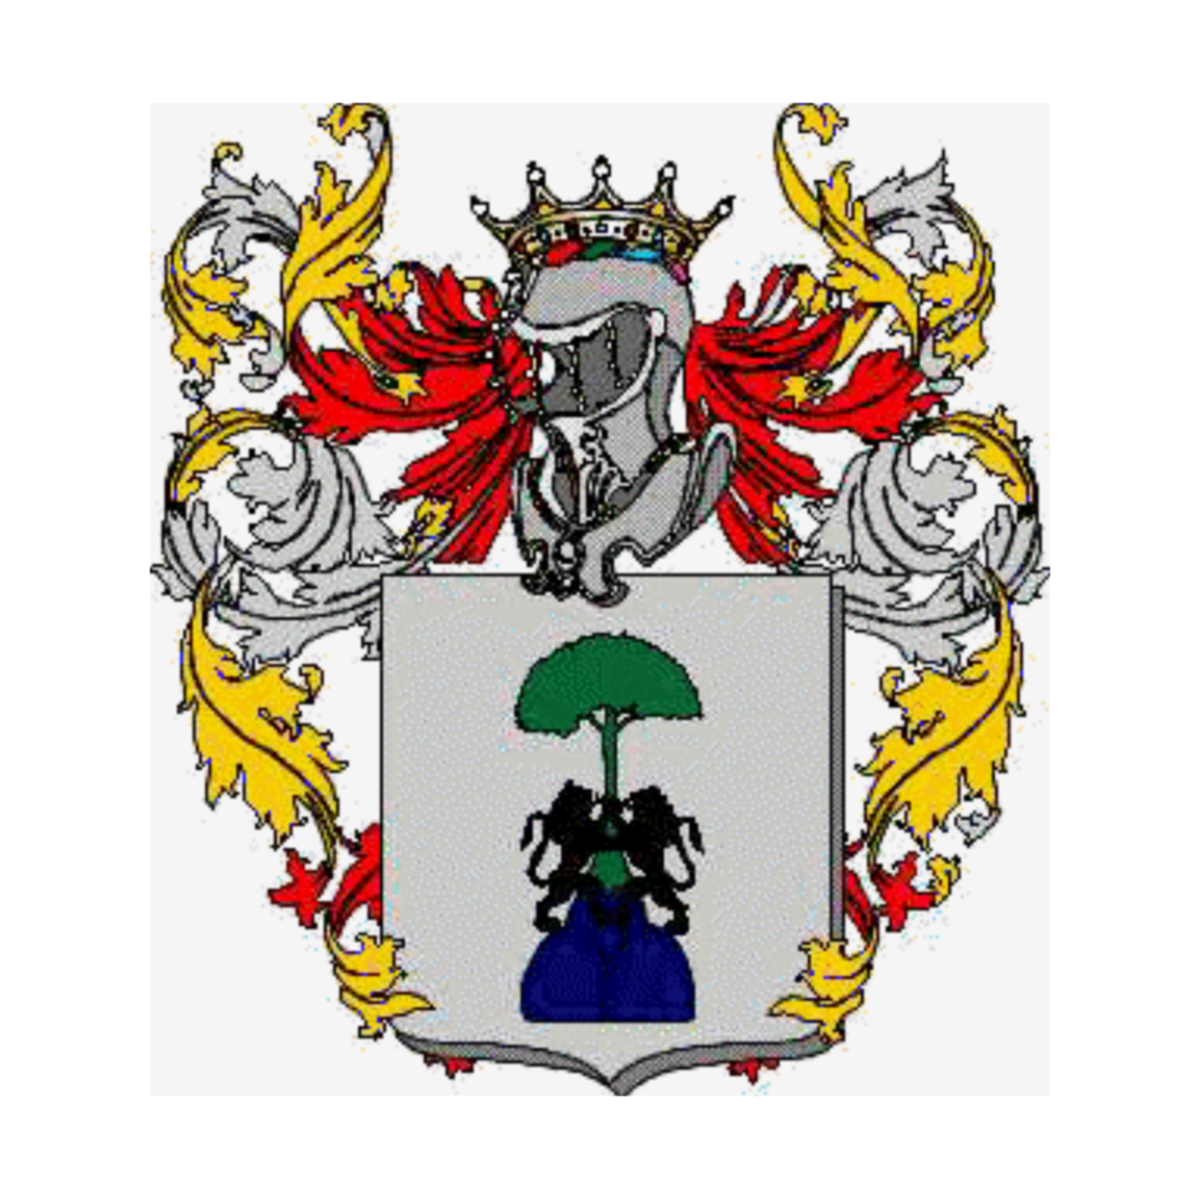 Escudo de la familiaPiccardi, Piccaro